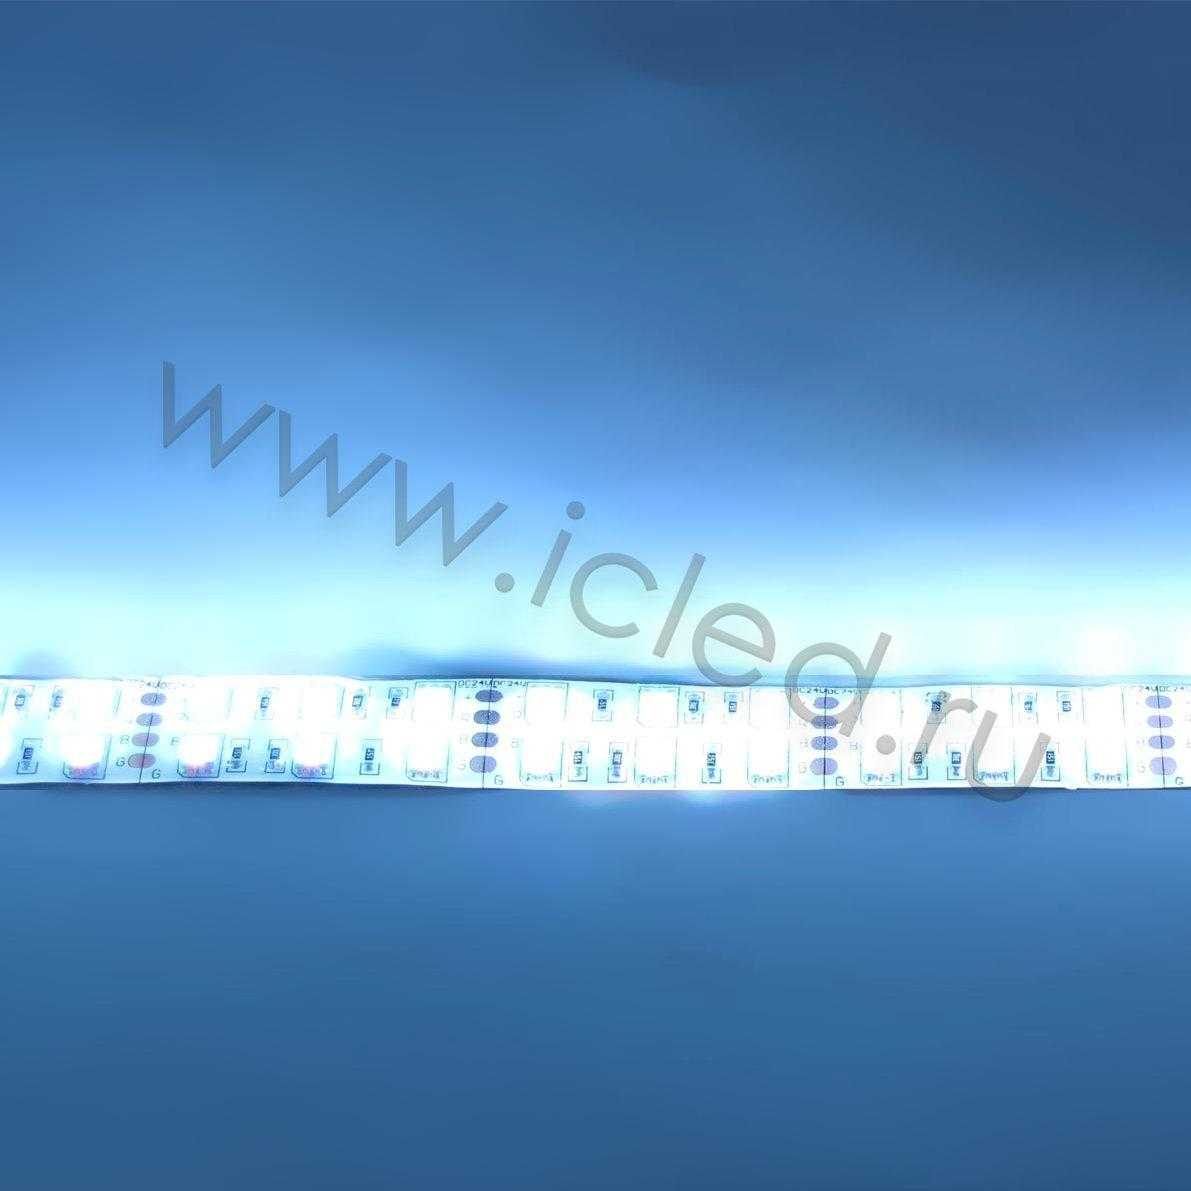 Влагозащищенные светодиодные ленты Светодиодная лента Standart PRO class, 5050, 120 led/m, RGB, 24V, IP65 Icled